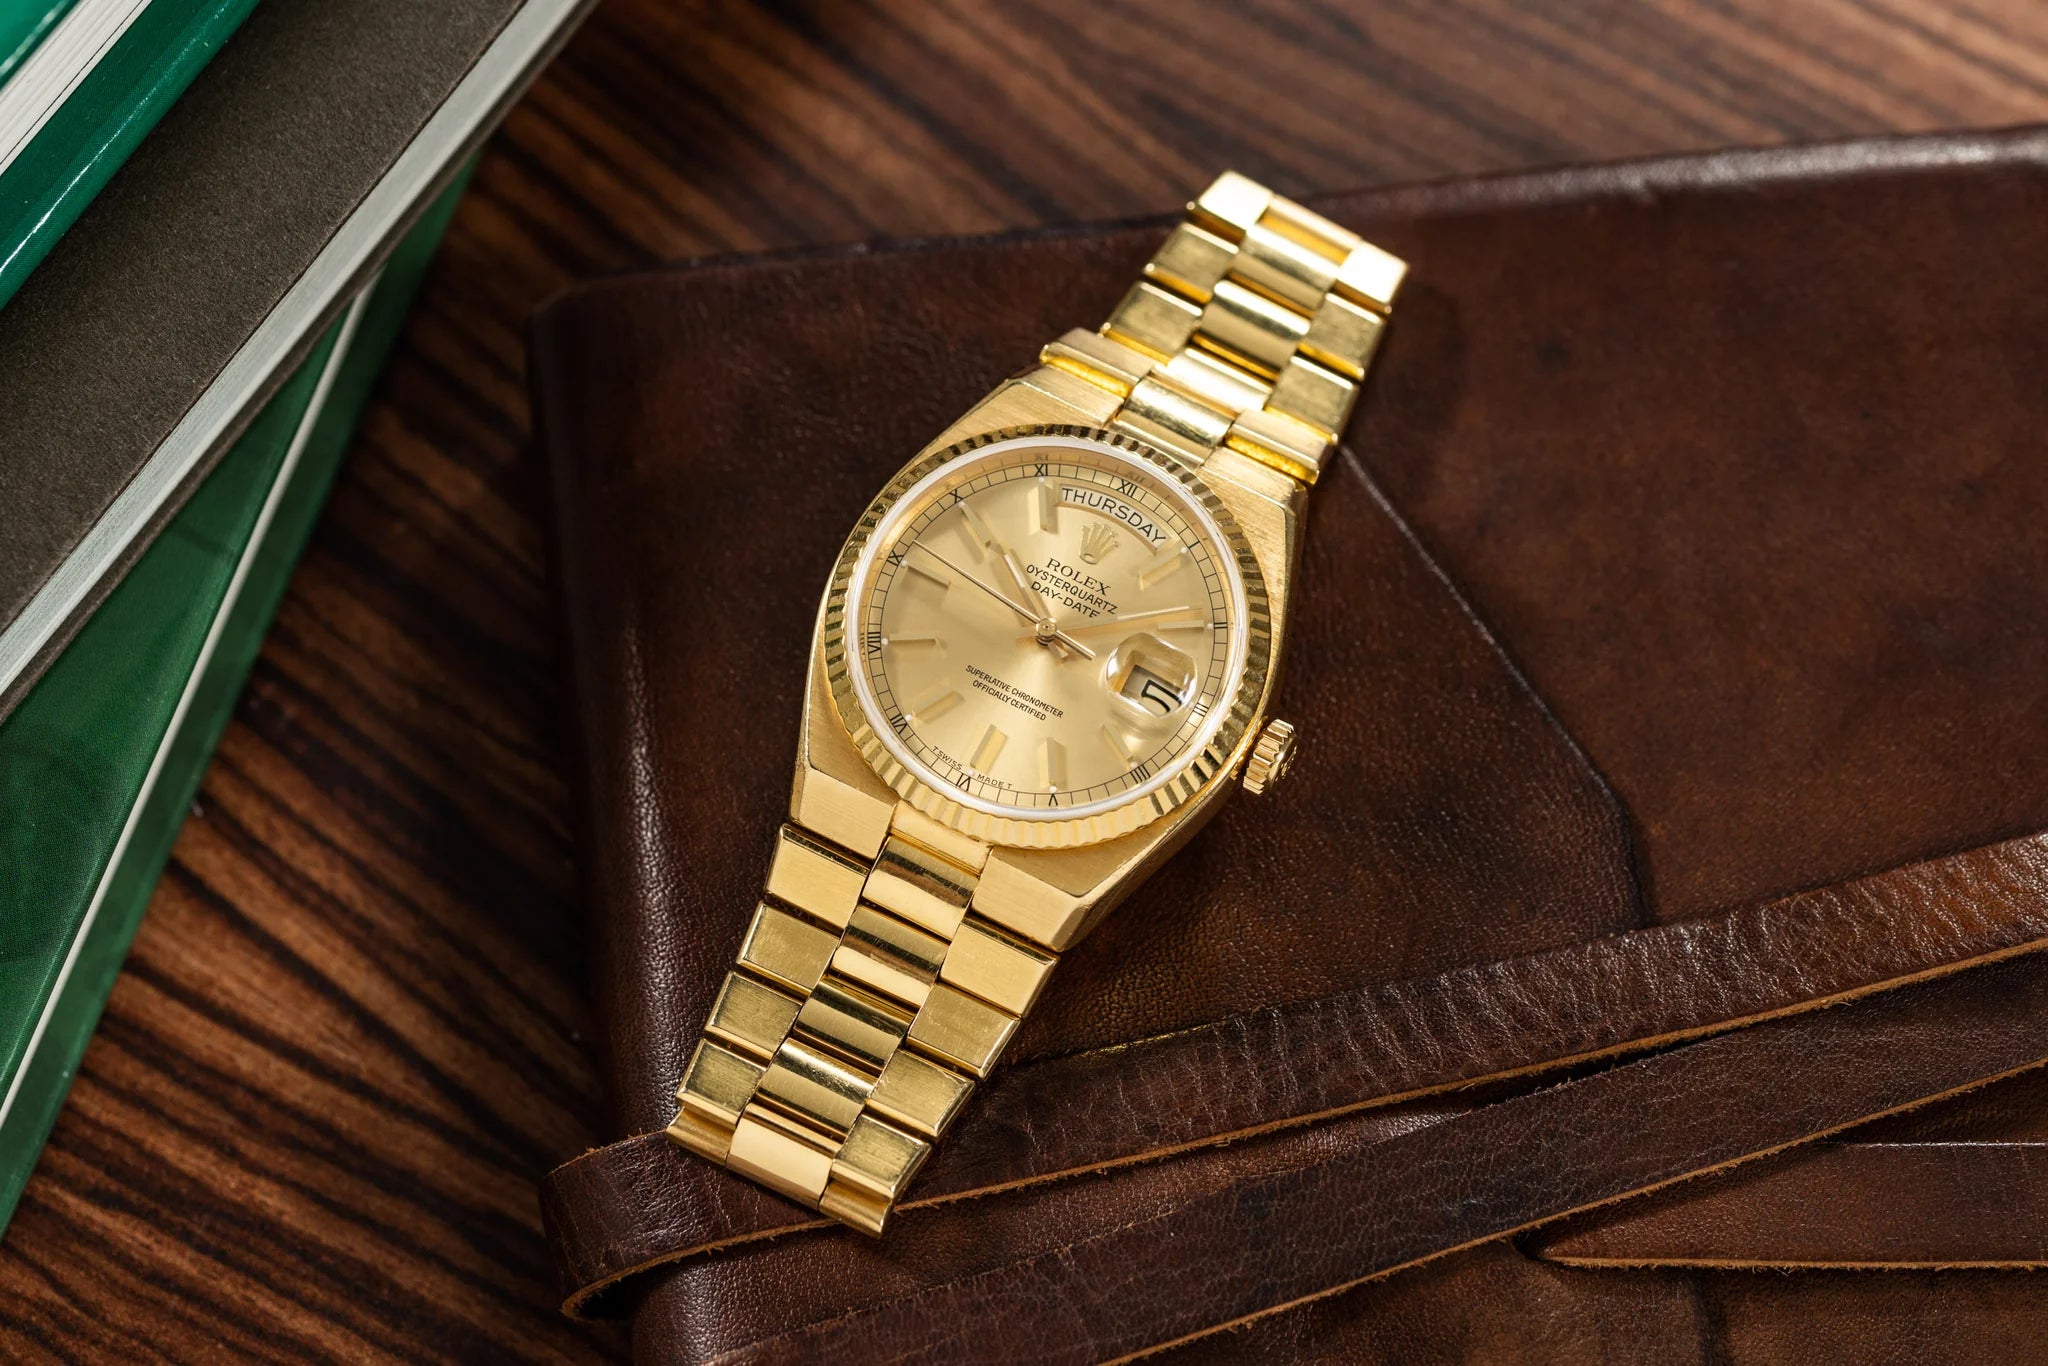 Rolex Women's Watches at J. Licht & Sons Rolex Boutique